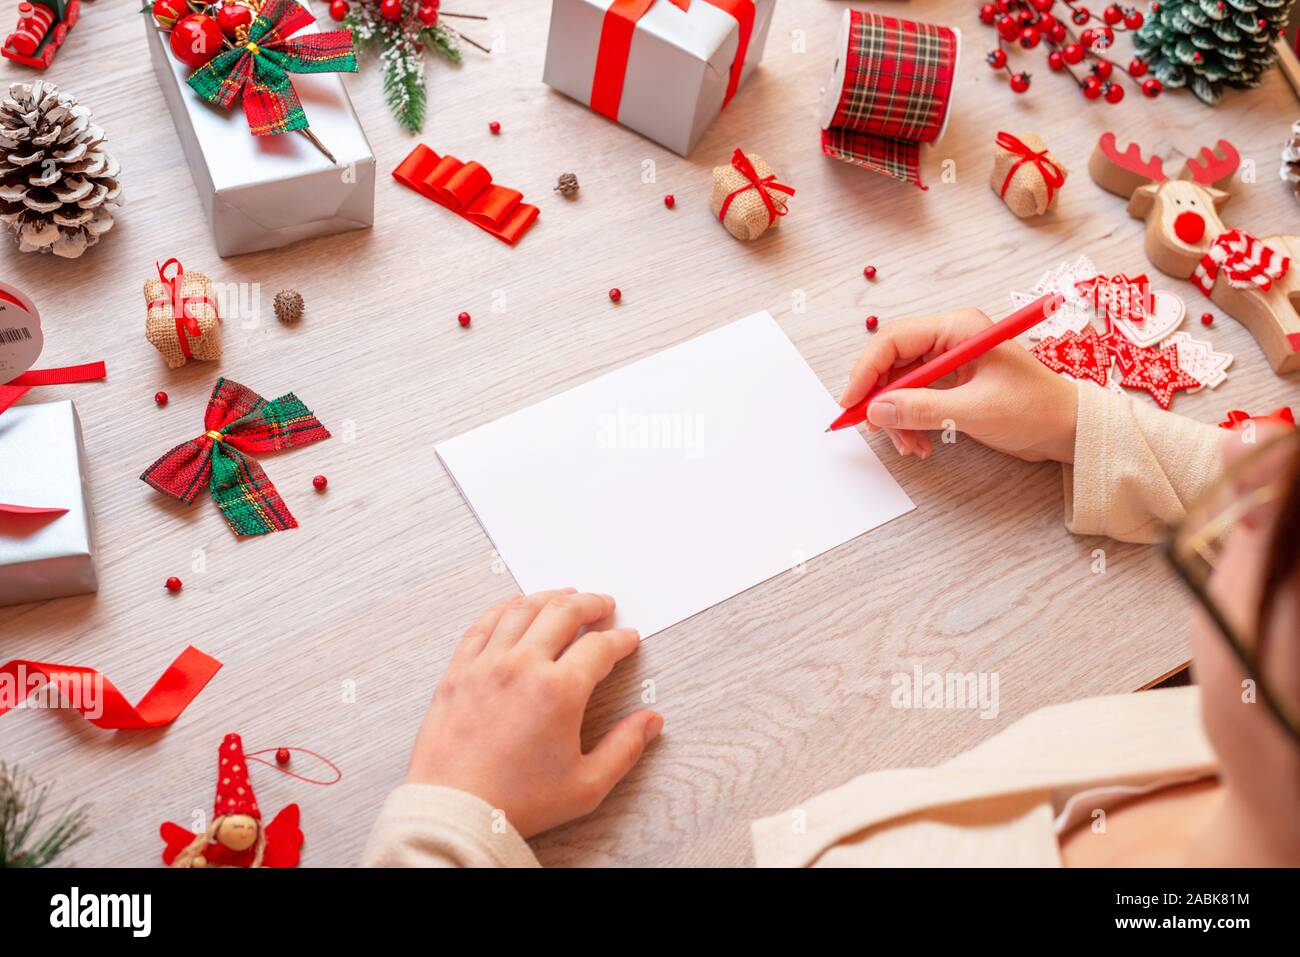 Mädchen schreibt auf Papier durch viele Weihnachten Geschenke und Dekorationen umgeben. Papier leer ist, Hinzufügen Grußkarte Text. Stockfoto